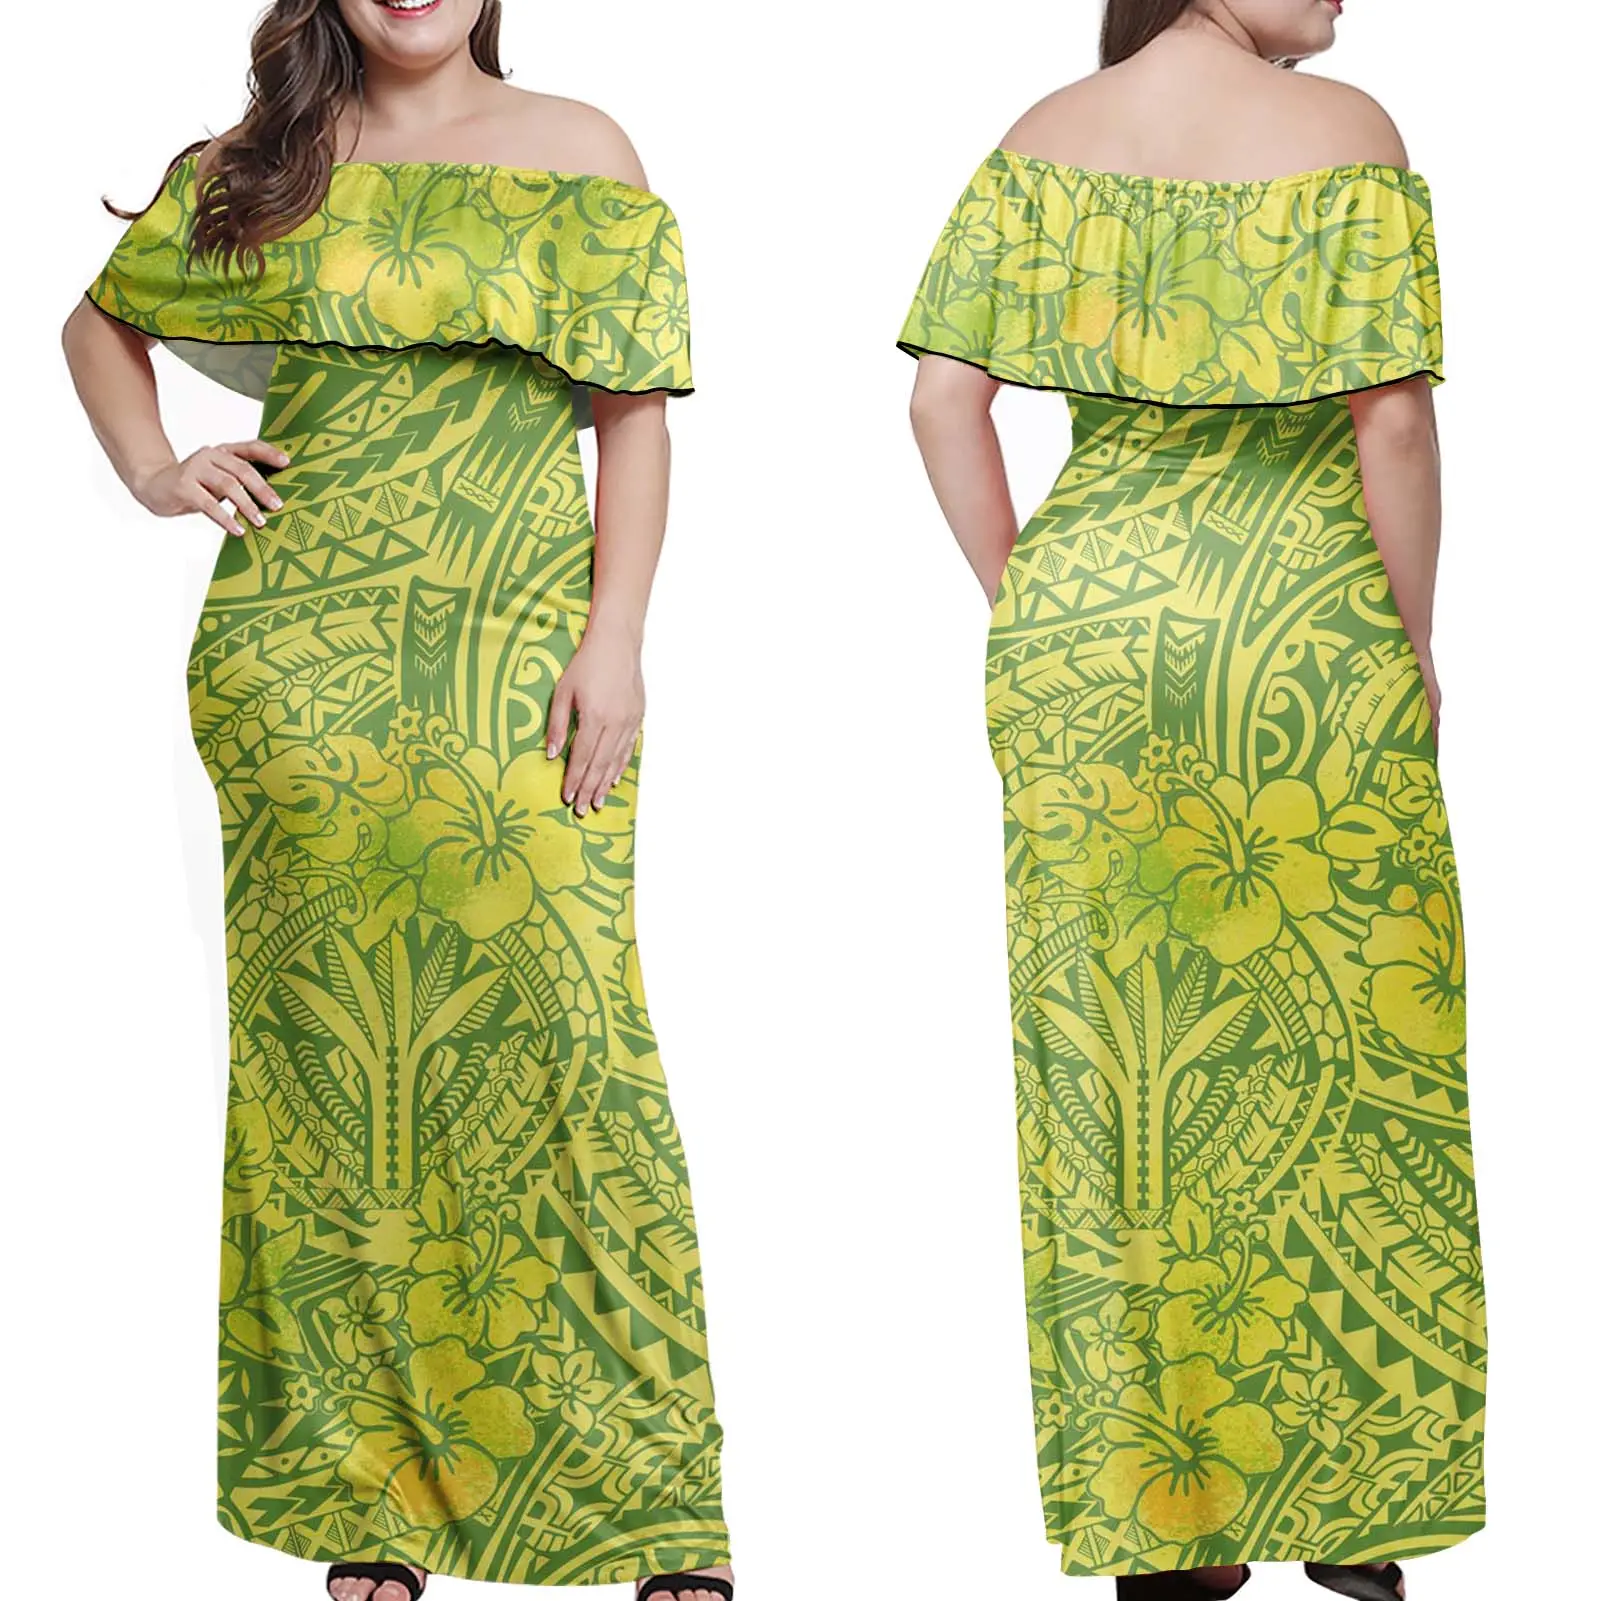 Robe vintage jusqu'à 7xl pour femmes, imprimées Tribal saman, polynéen, vêtements chinois décontractés, habits traditionnels, meilleures ventes